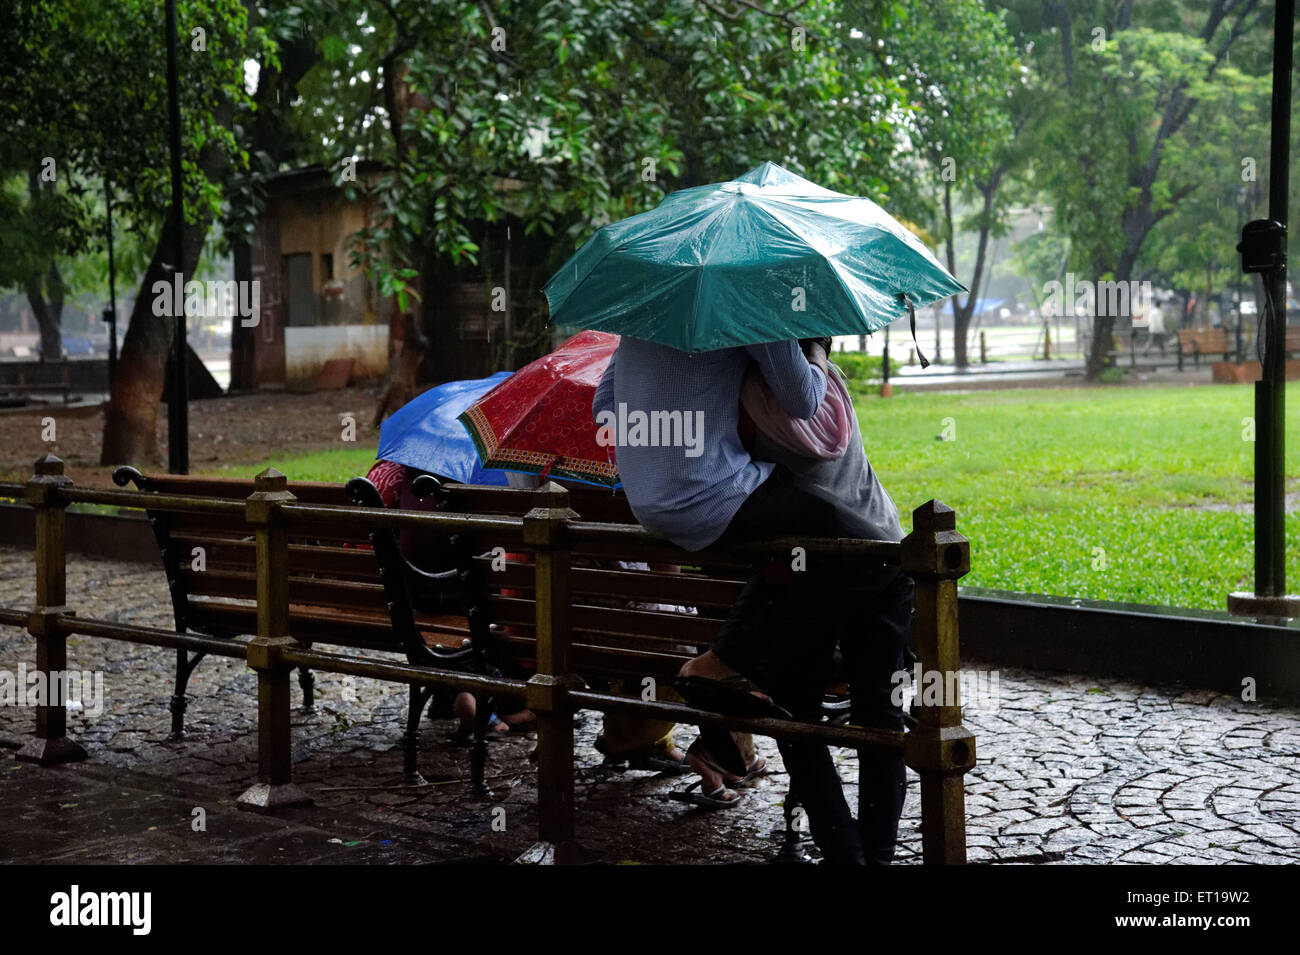 asian rain scenes in a park